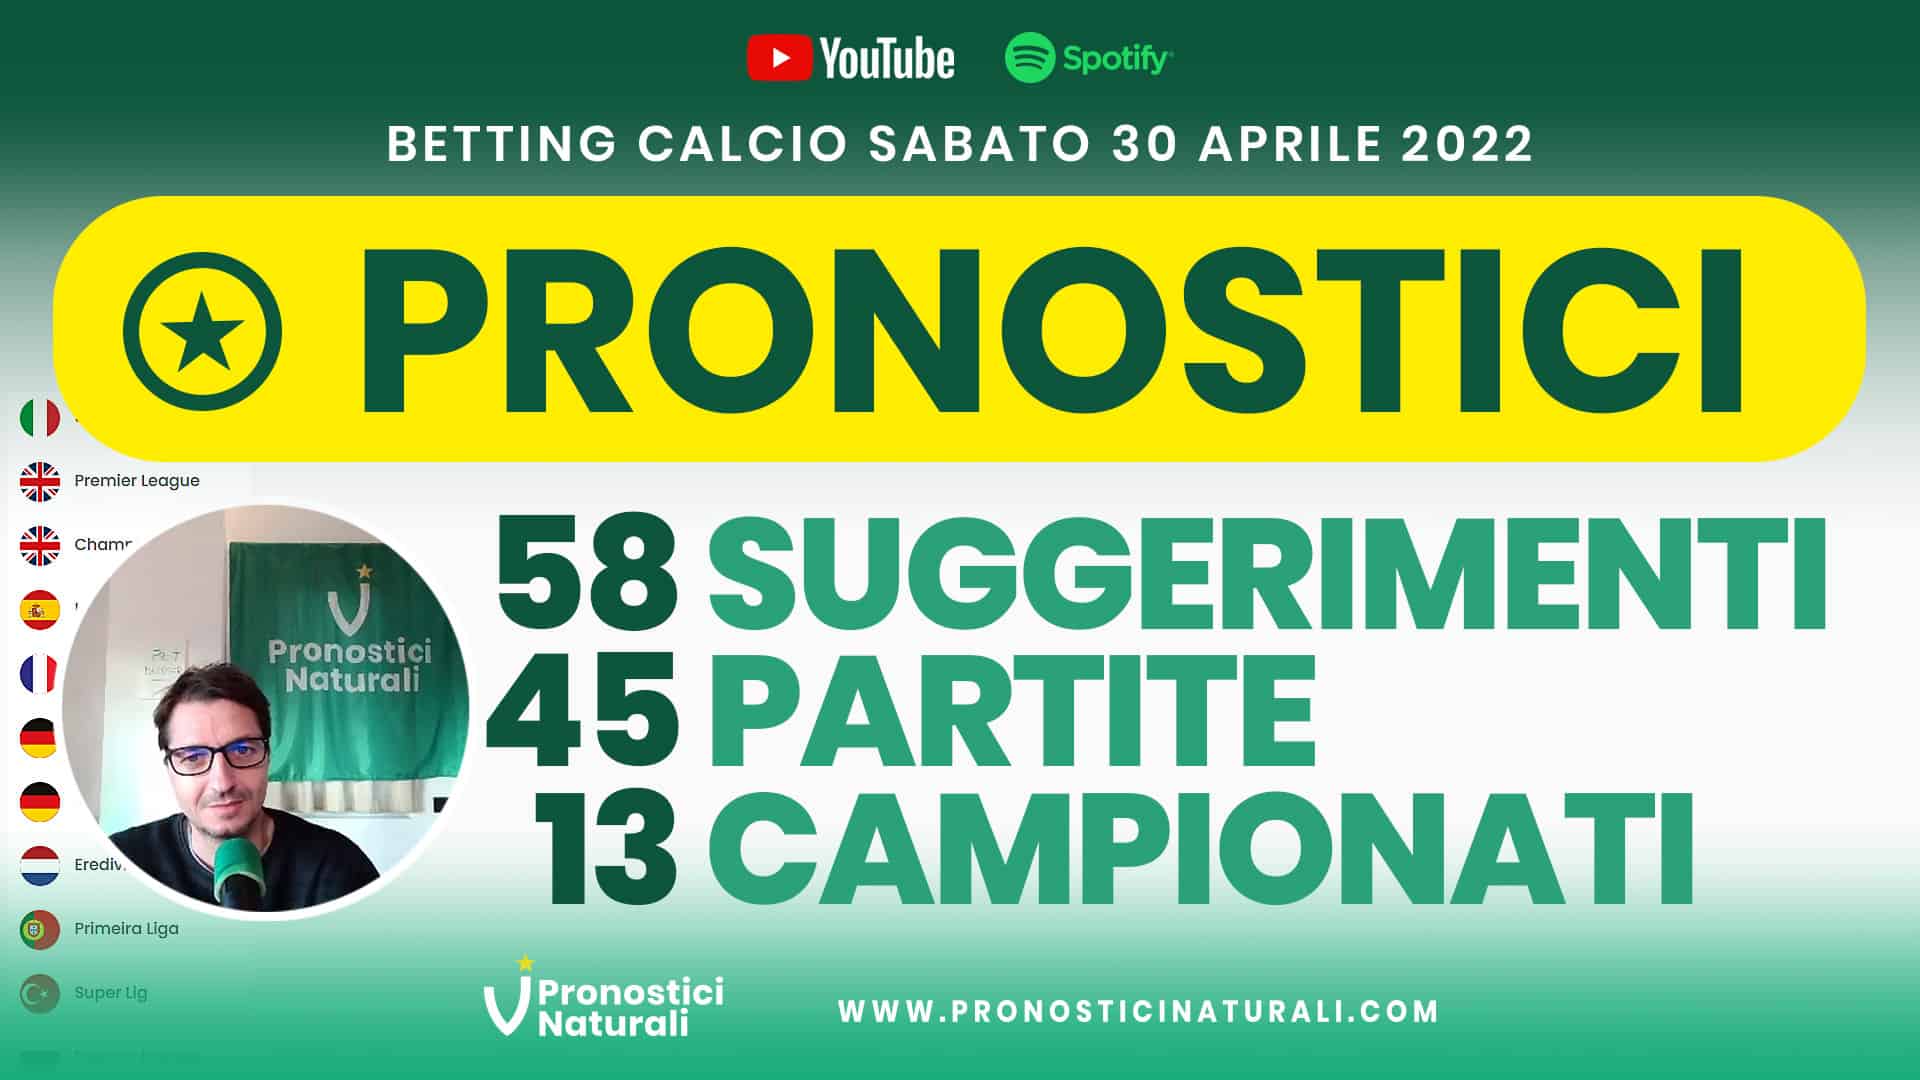 Pronostici Naturali Video Analisi Scommesse Betting Calcio Analisi Pre Partite Sabato 30 Aprile 2022